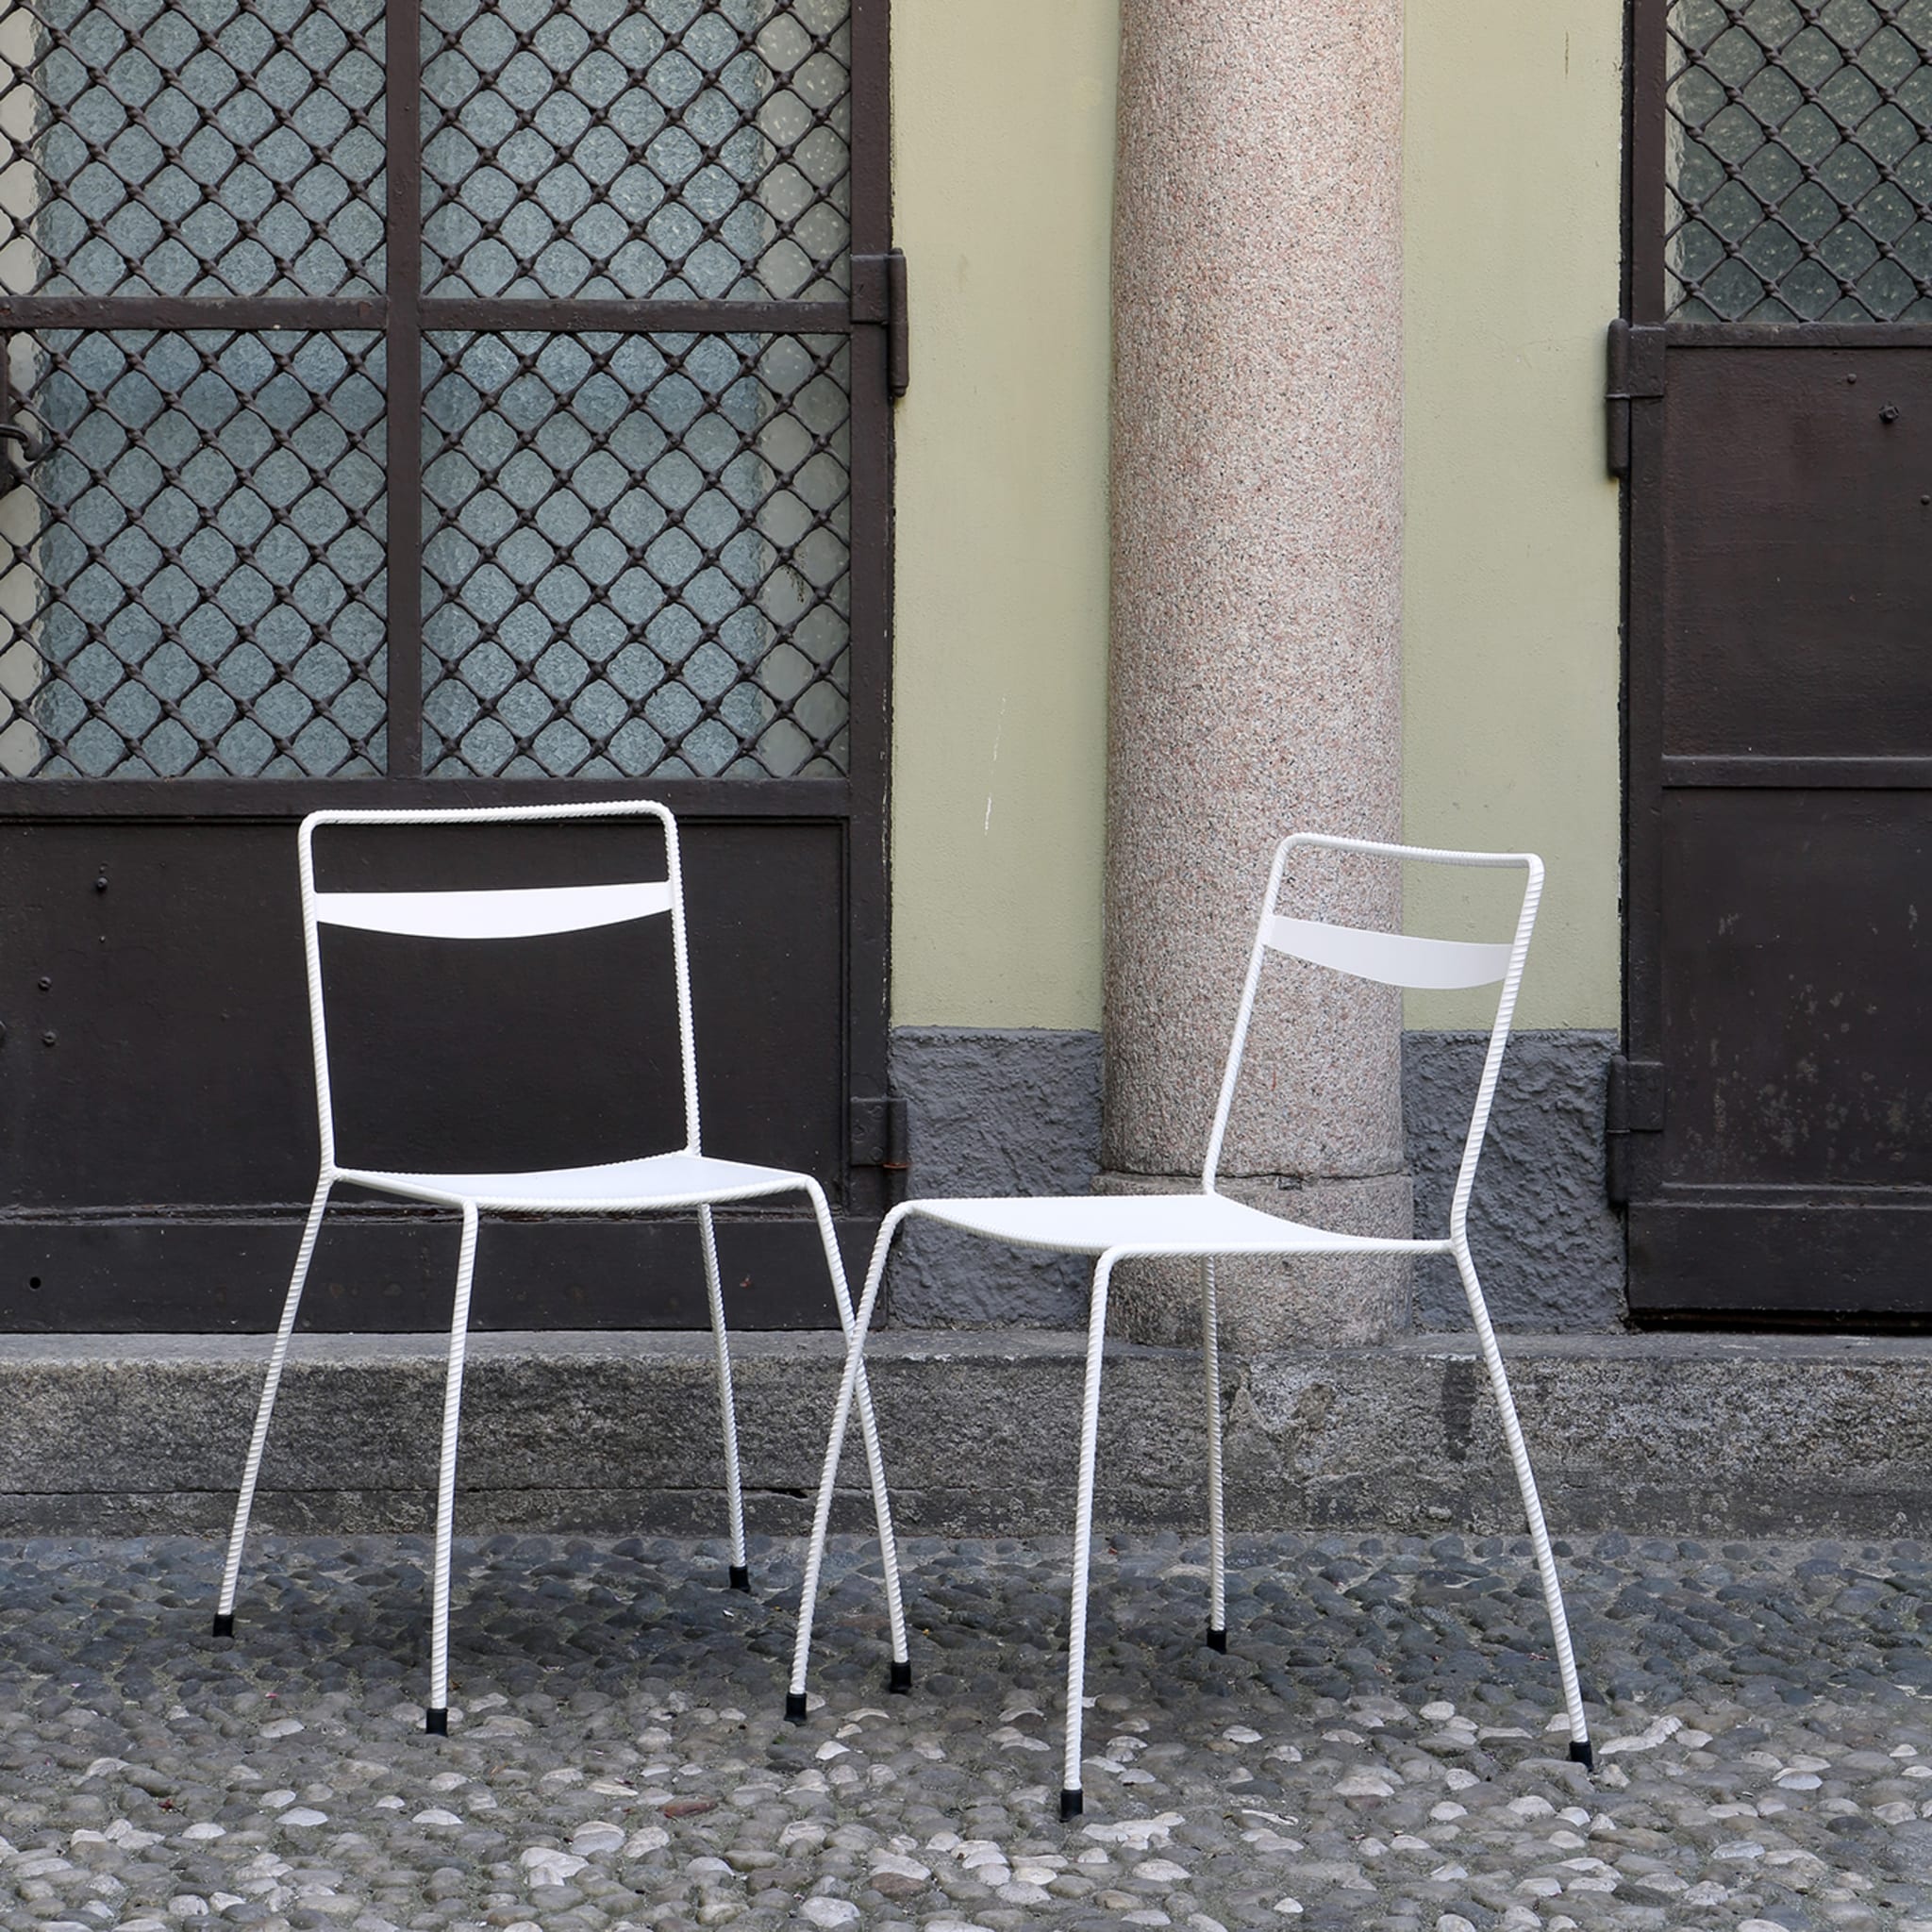 Tondella White Chair by Maurizio Peregalli - Alternative view 2